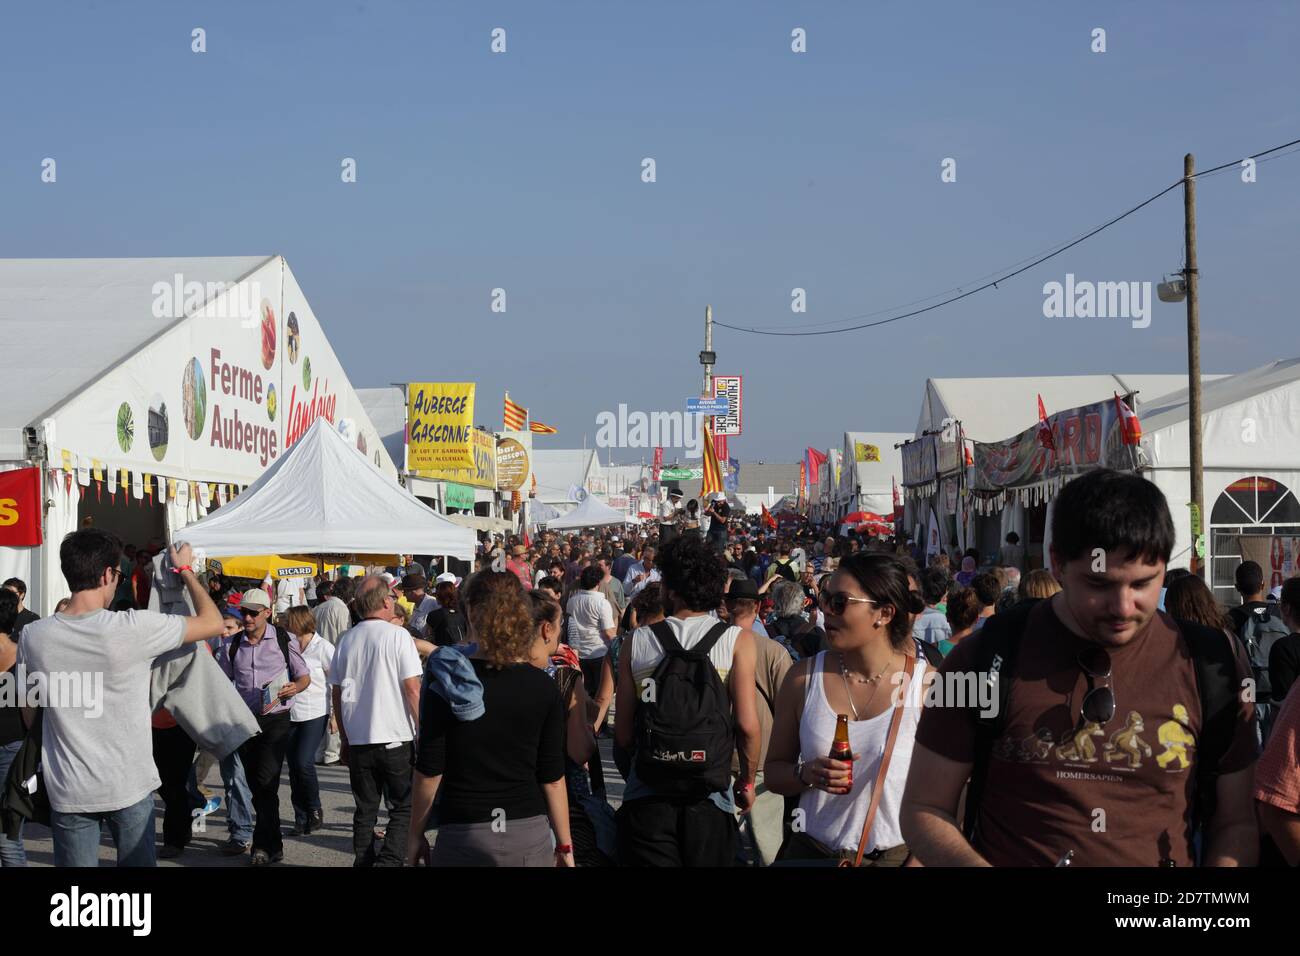 Fête de l'humanité 2014 : viele Menschen gehen in einer Gasse des Festivals der Menschheit und eine Frau hält ein Bier in der Hand beim Gehen Stockfoto